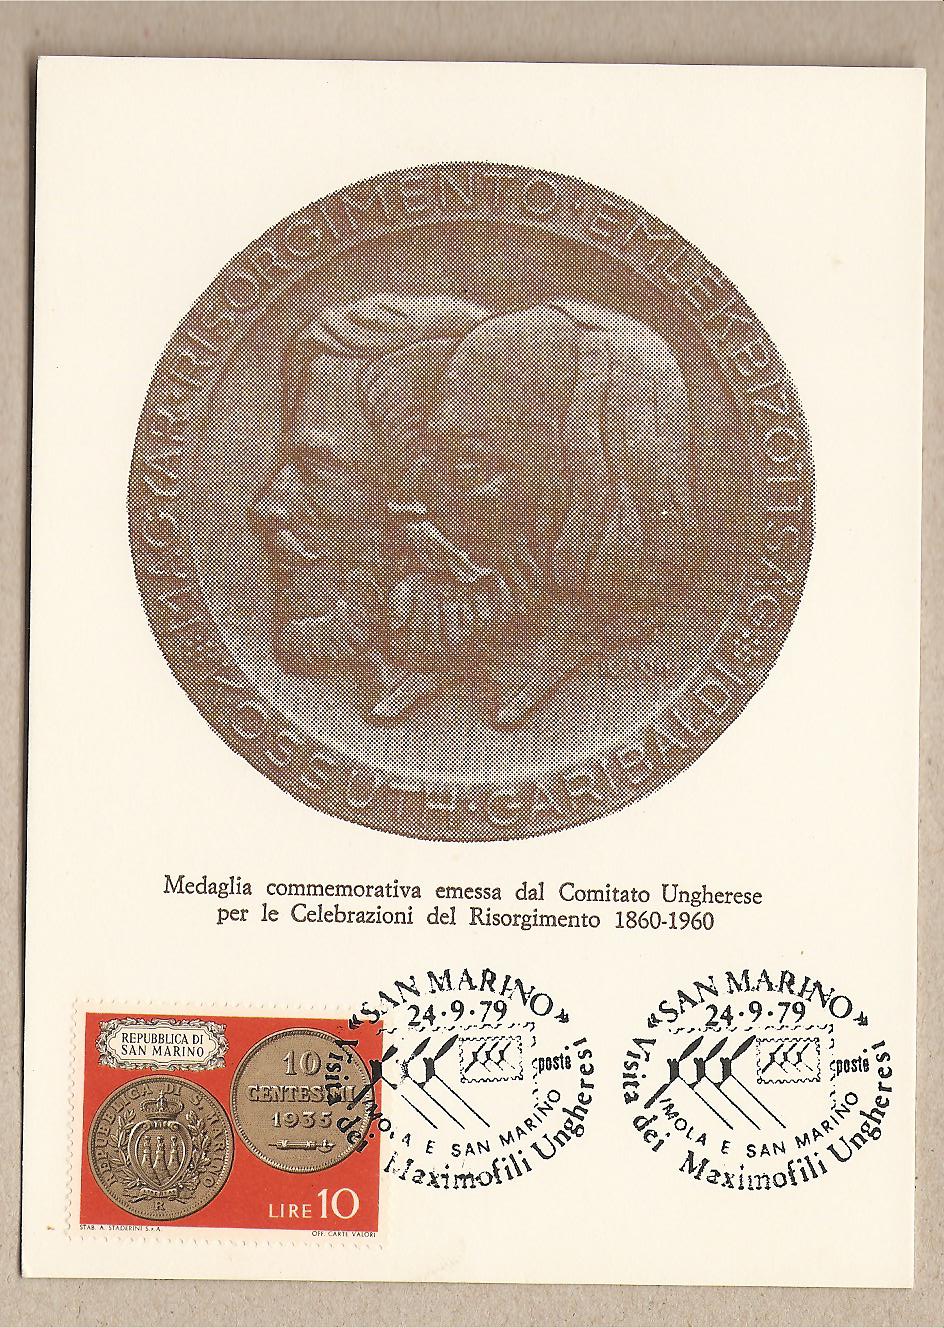 37512 - San Marino - cartolina con annullo speciale: Visita dei Maximofili Ungheresi  - 1979